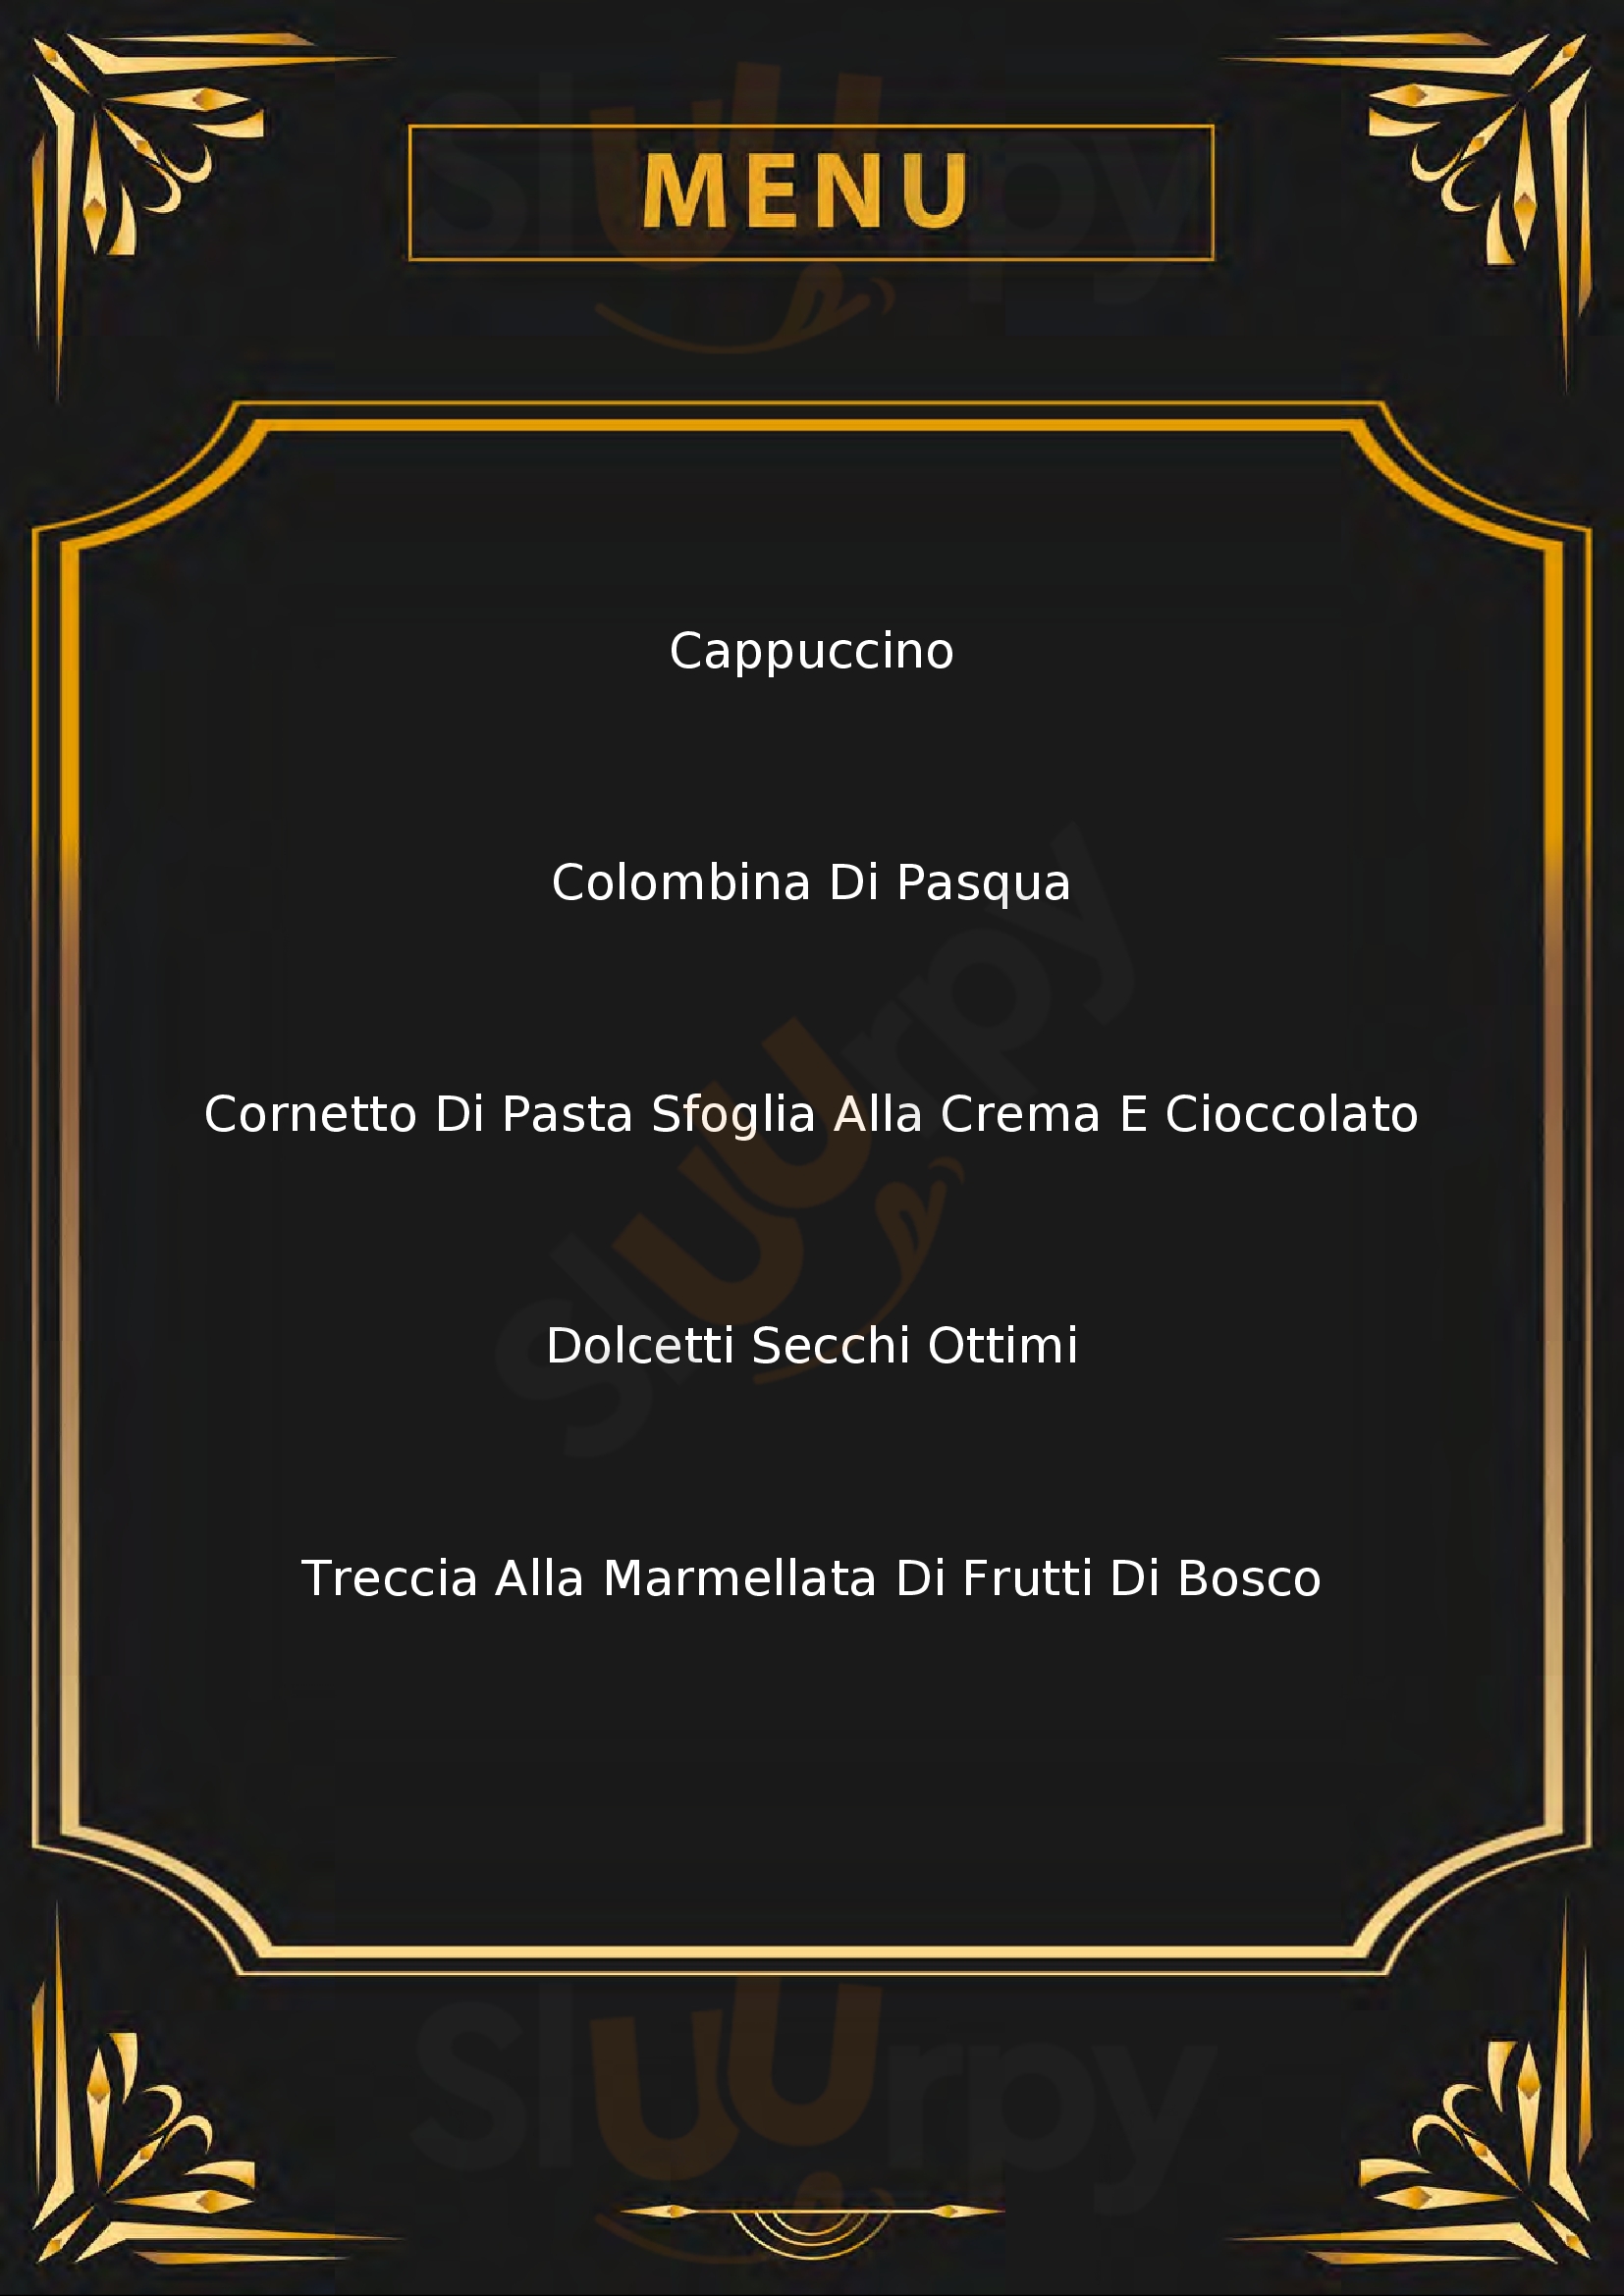 Dolce Cafe Santo Stefano di Rogliano menù 1 pagina